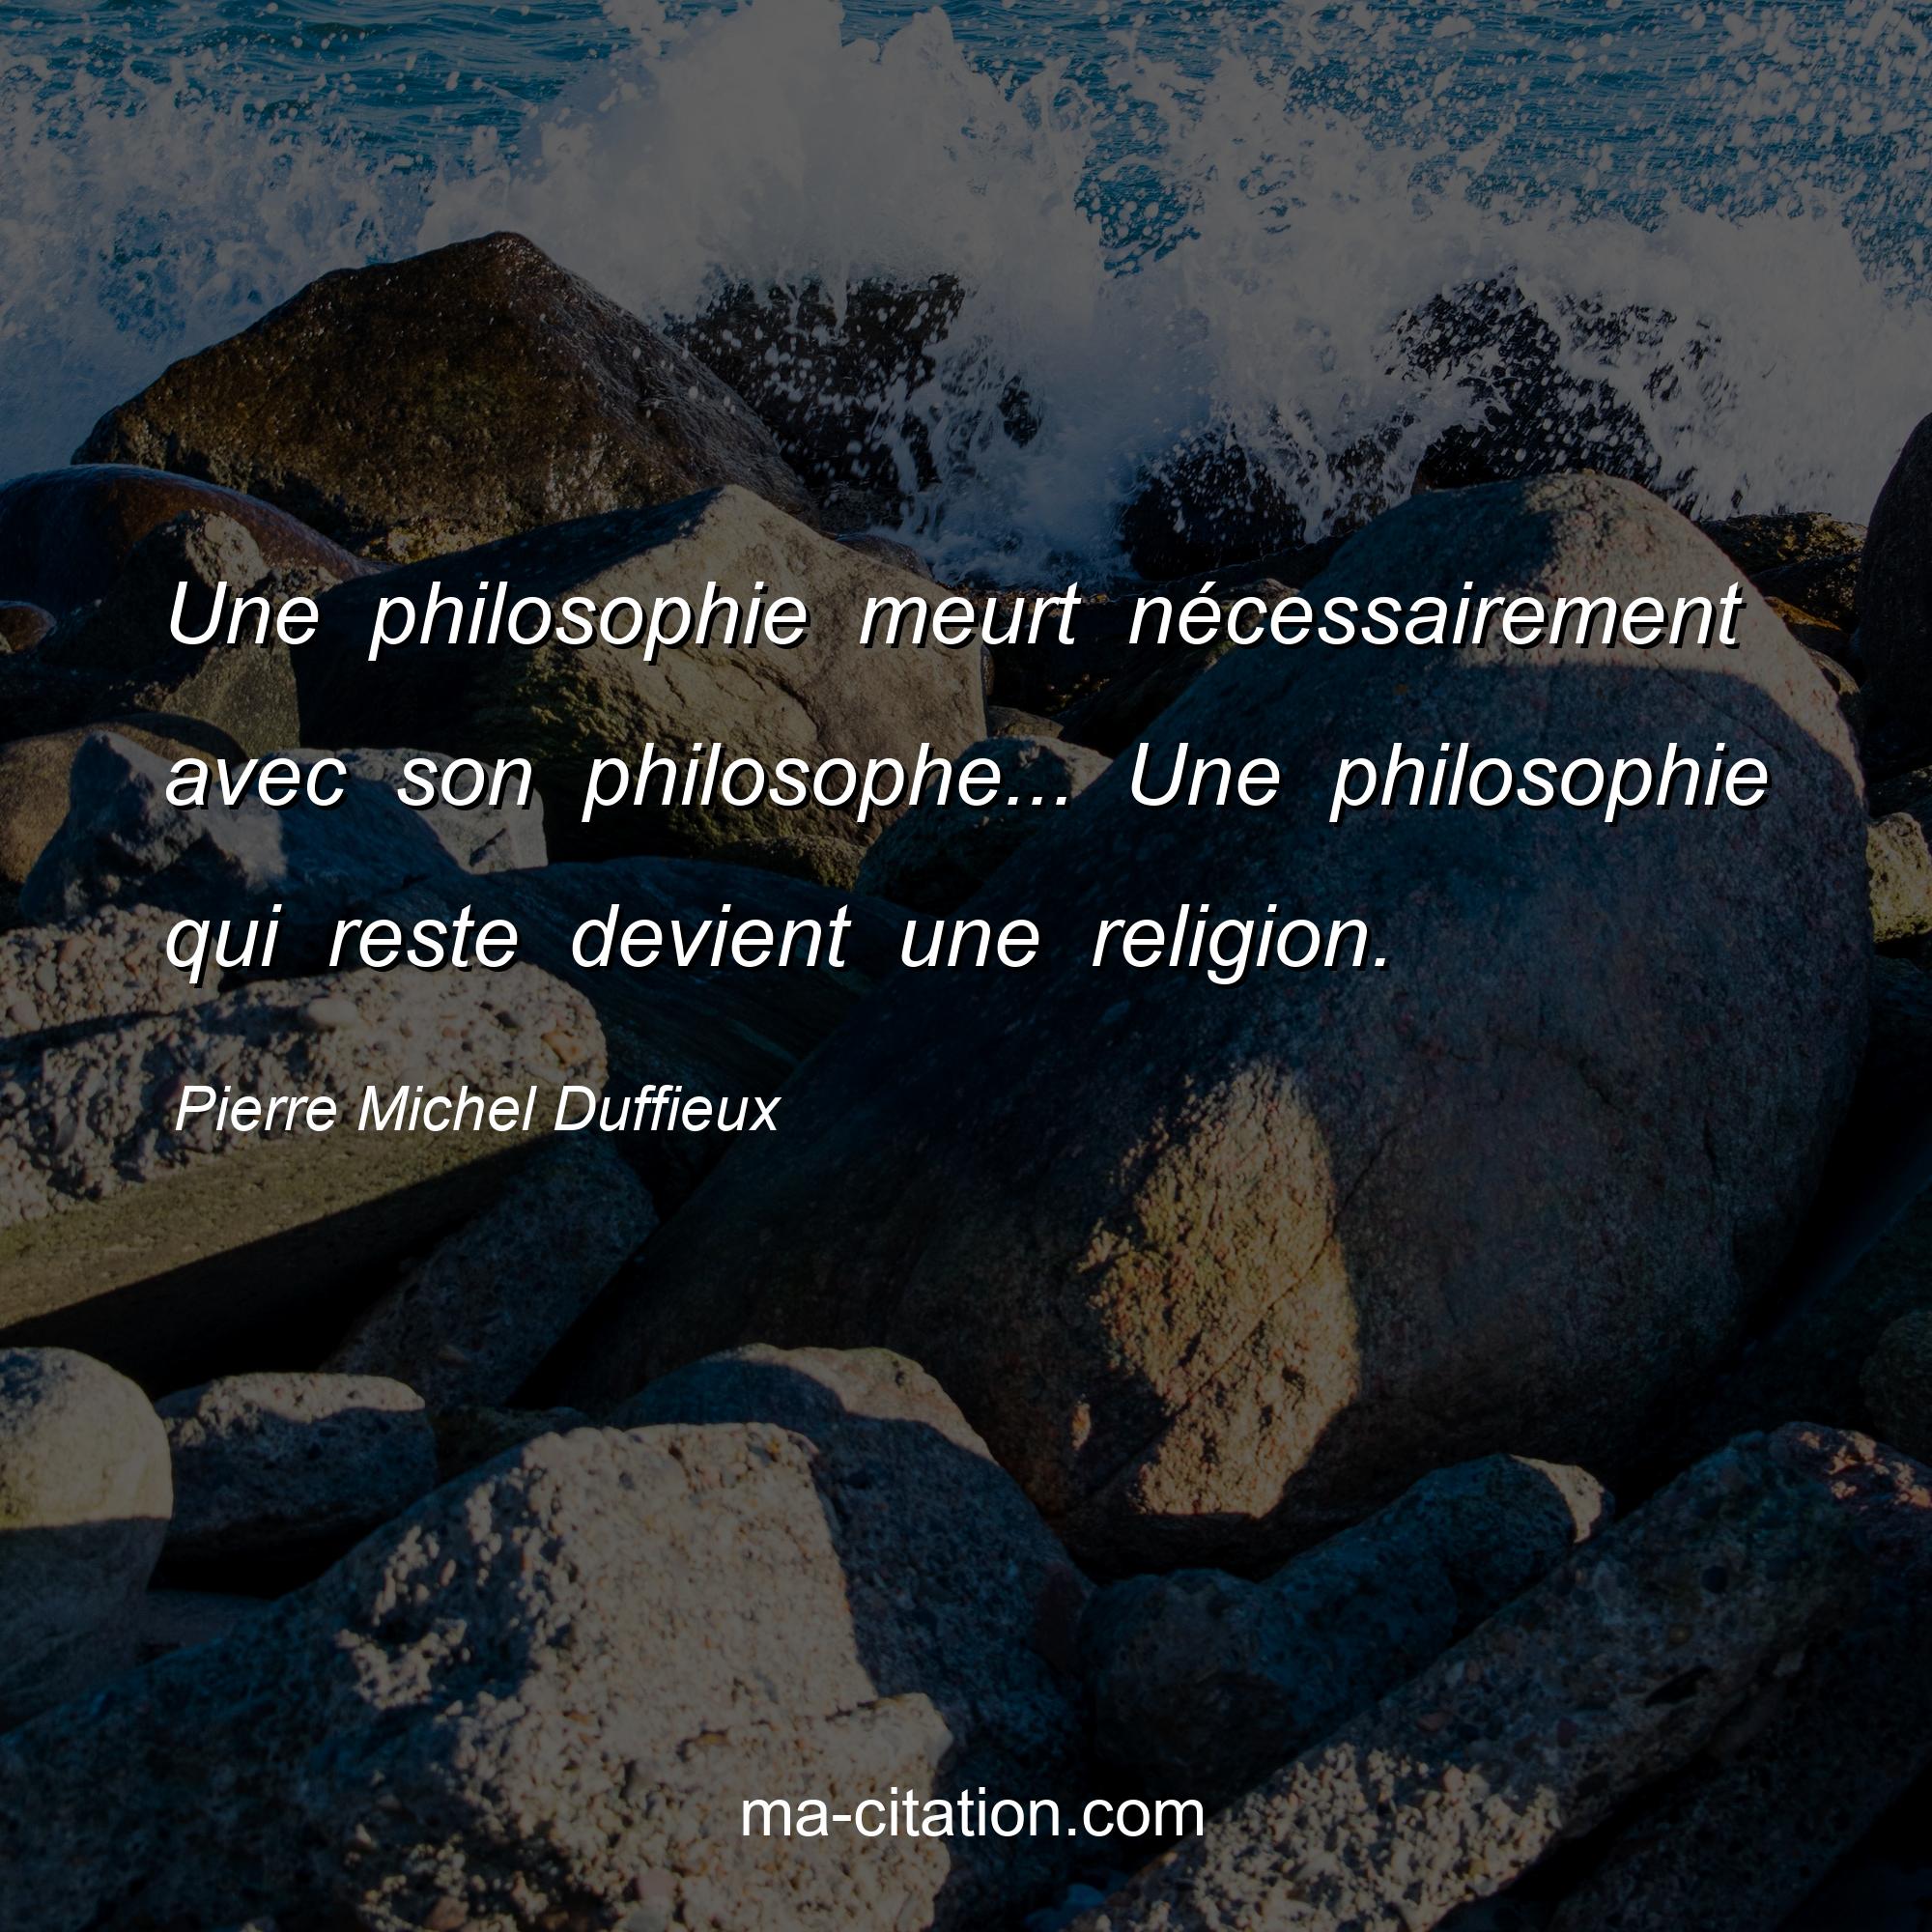 Pierre Michel Duffieux : Une philosophie meurt nécessairement avec son philosophe... Une philosophie qui reste devient une religion.